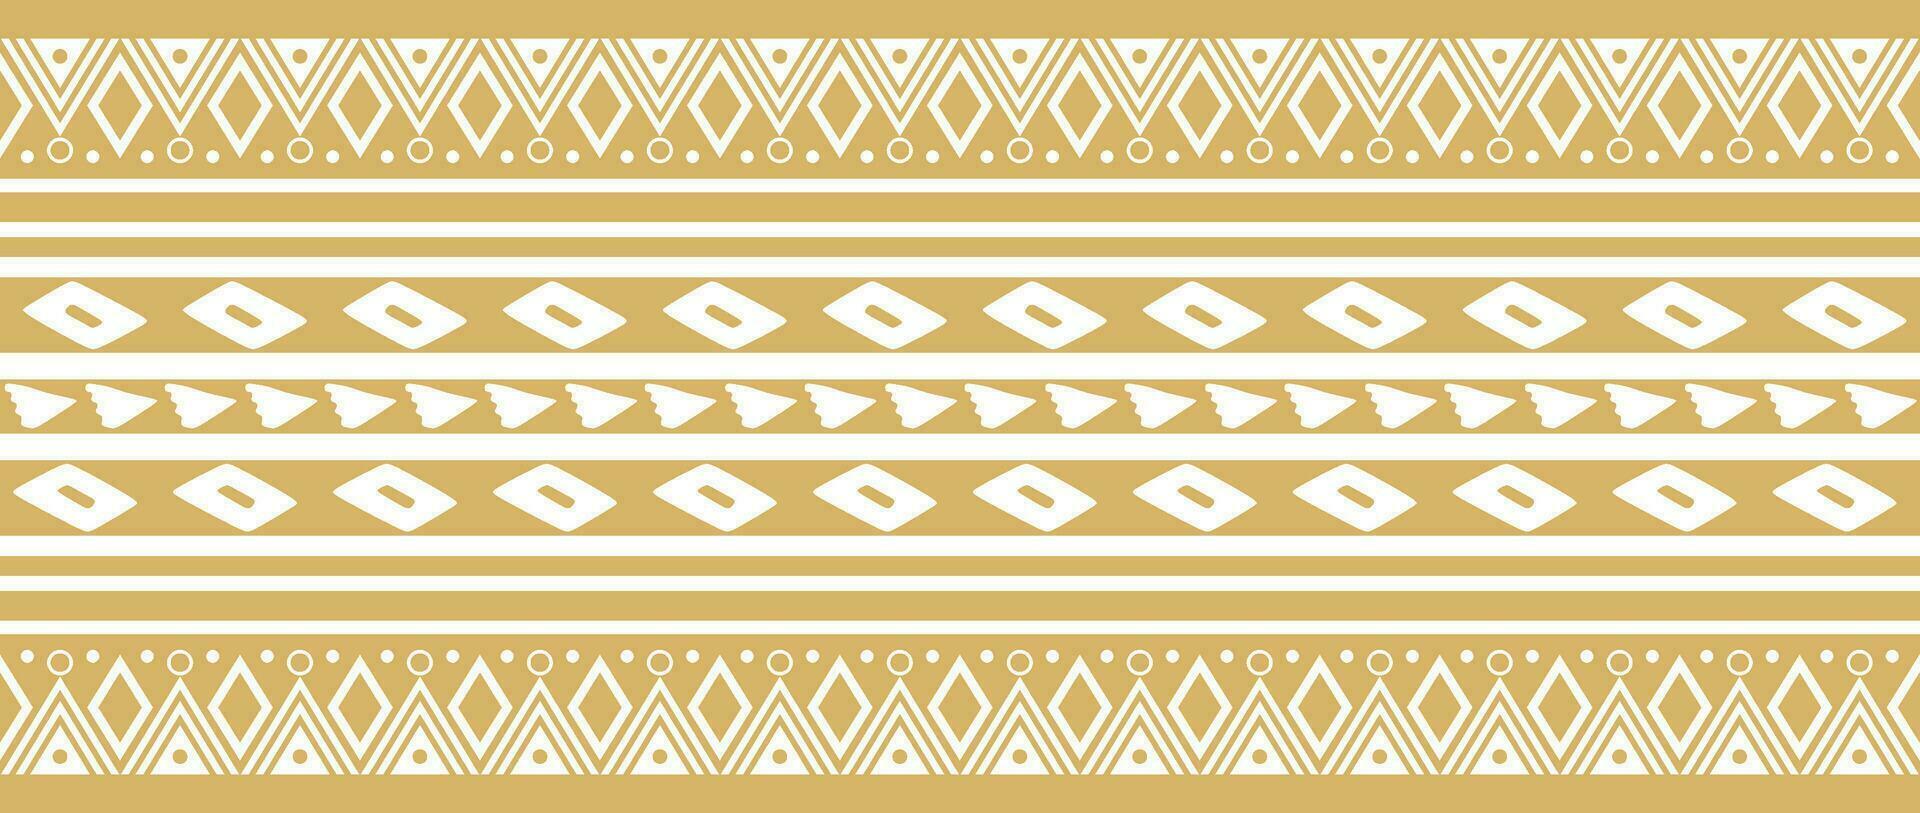 vektor gyllene sömlös indisk mönster. nationell sömlös ornament, gränser, ramar. färgad dekorationer av de människors av söder Amerika, maja, inka, azteker. skriva ut för tyg, papper, textil-